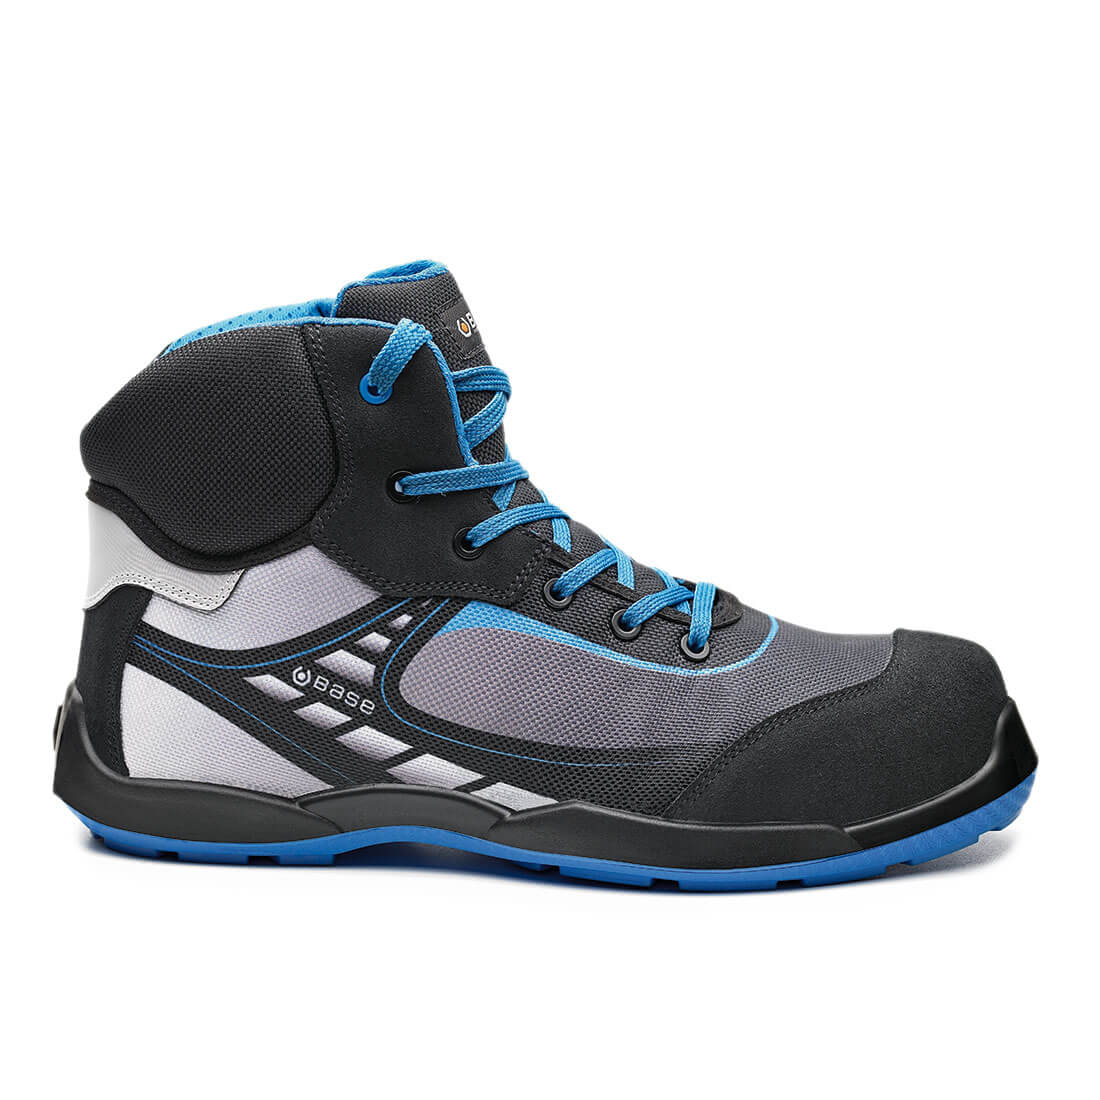 Base Bowling Top Toe Cap Work Safety Shoes Black/Blue 1#colour_black-blue